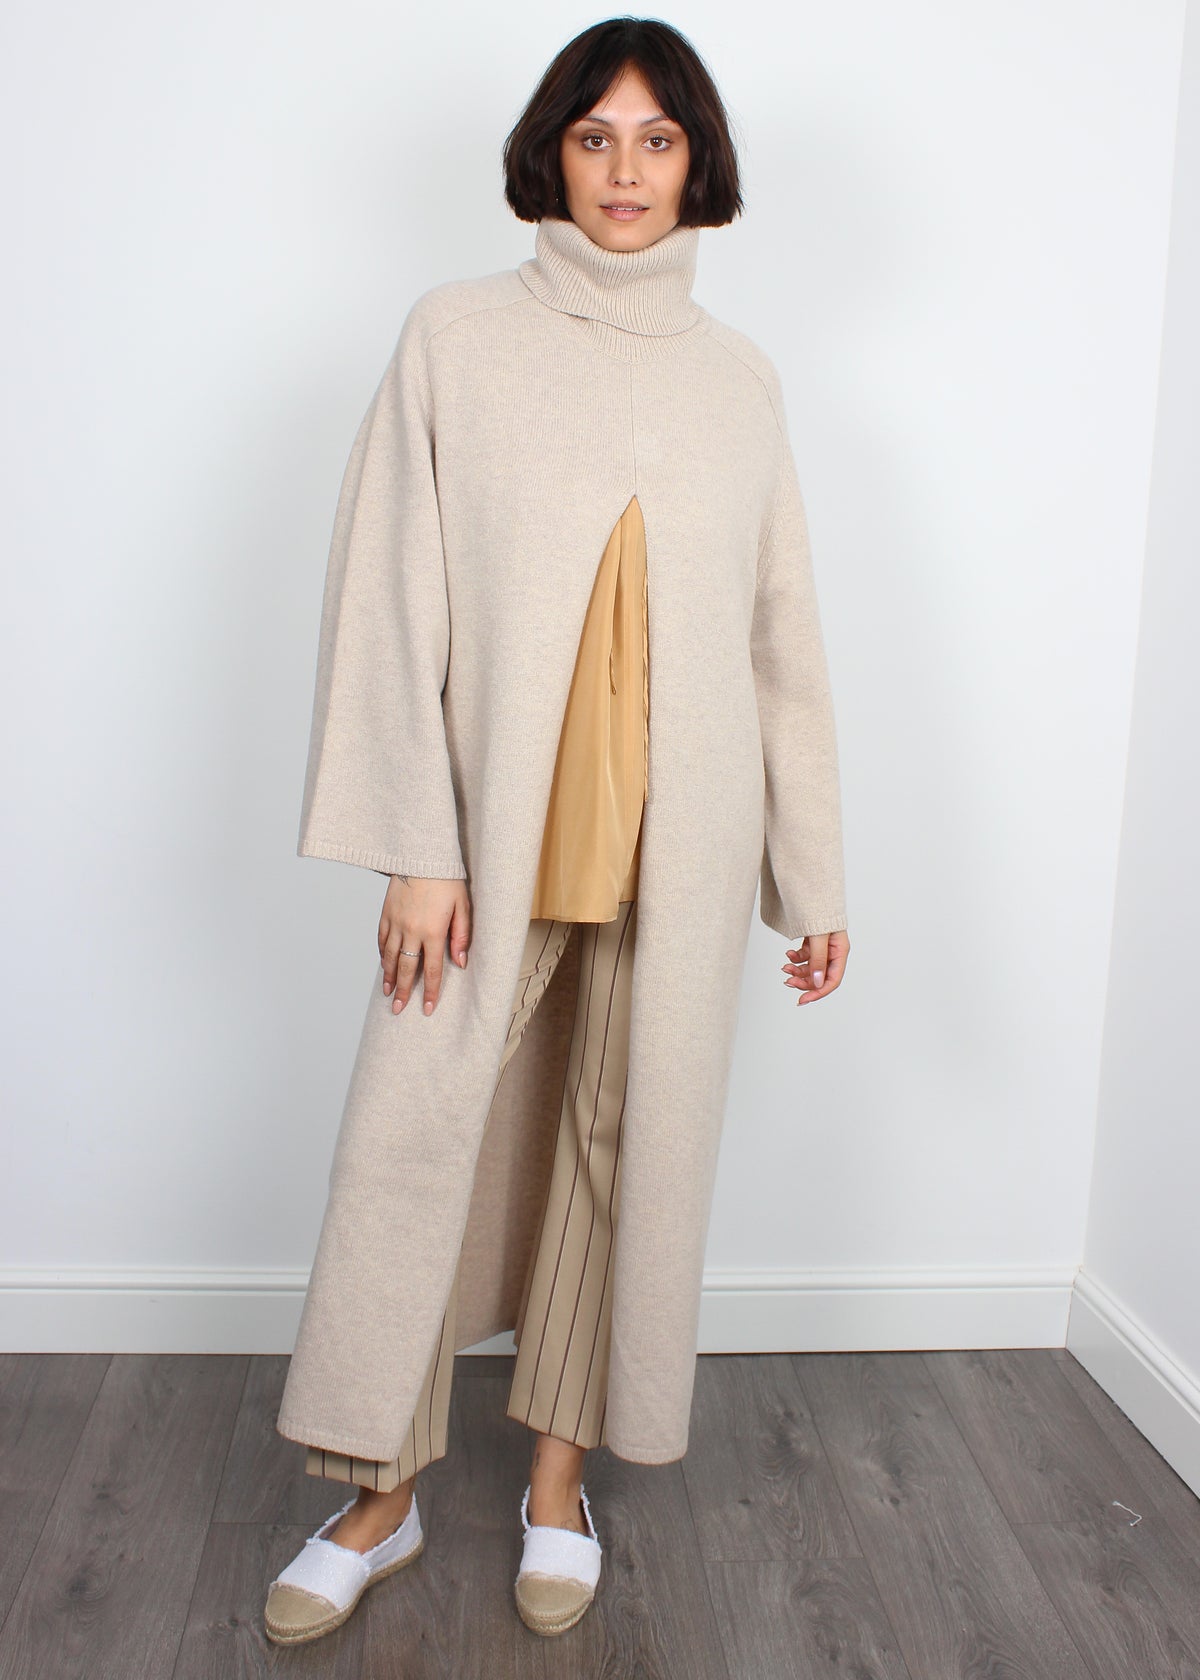 Joseph Viviane merino-wool birch dress